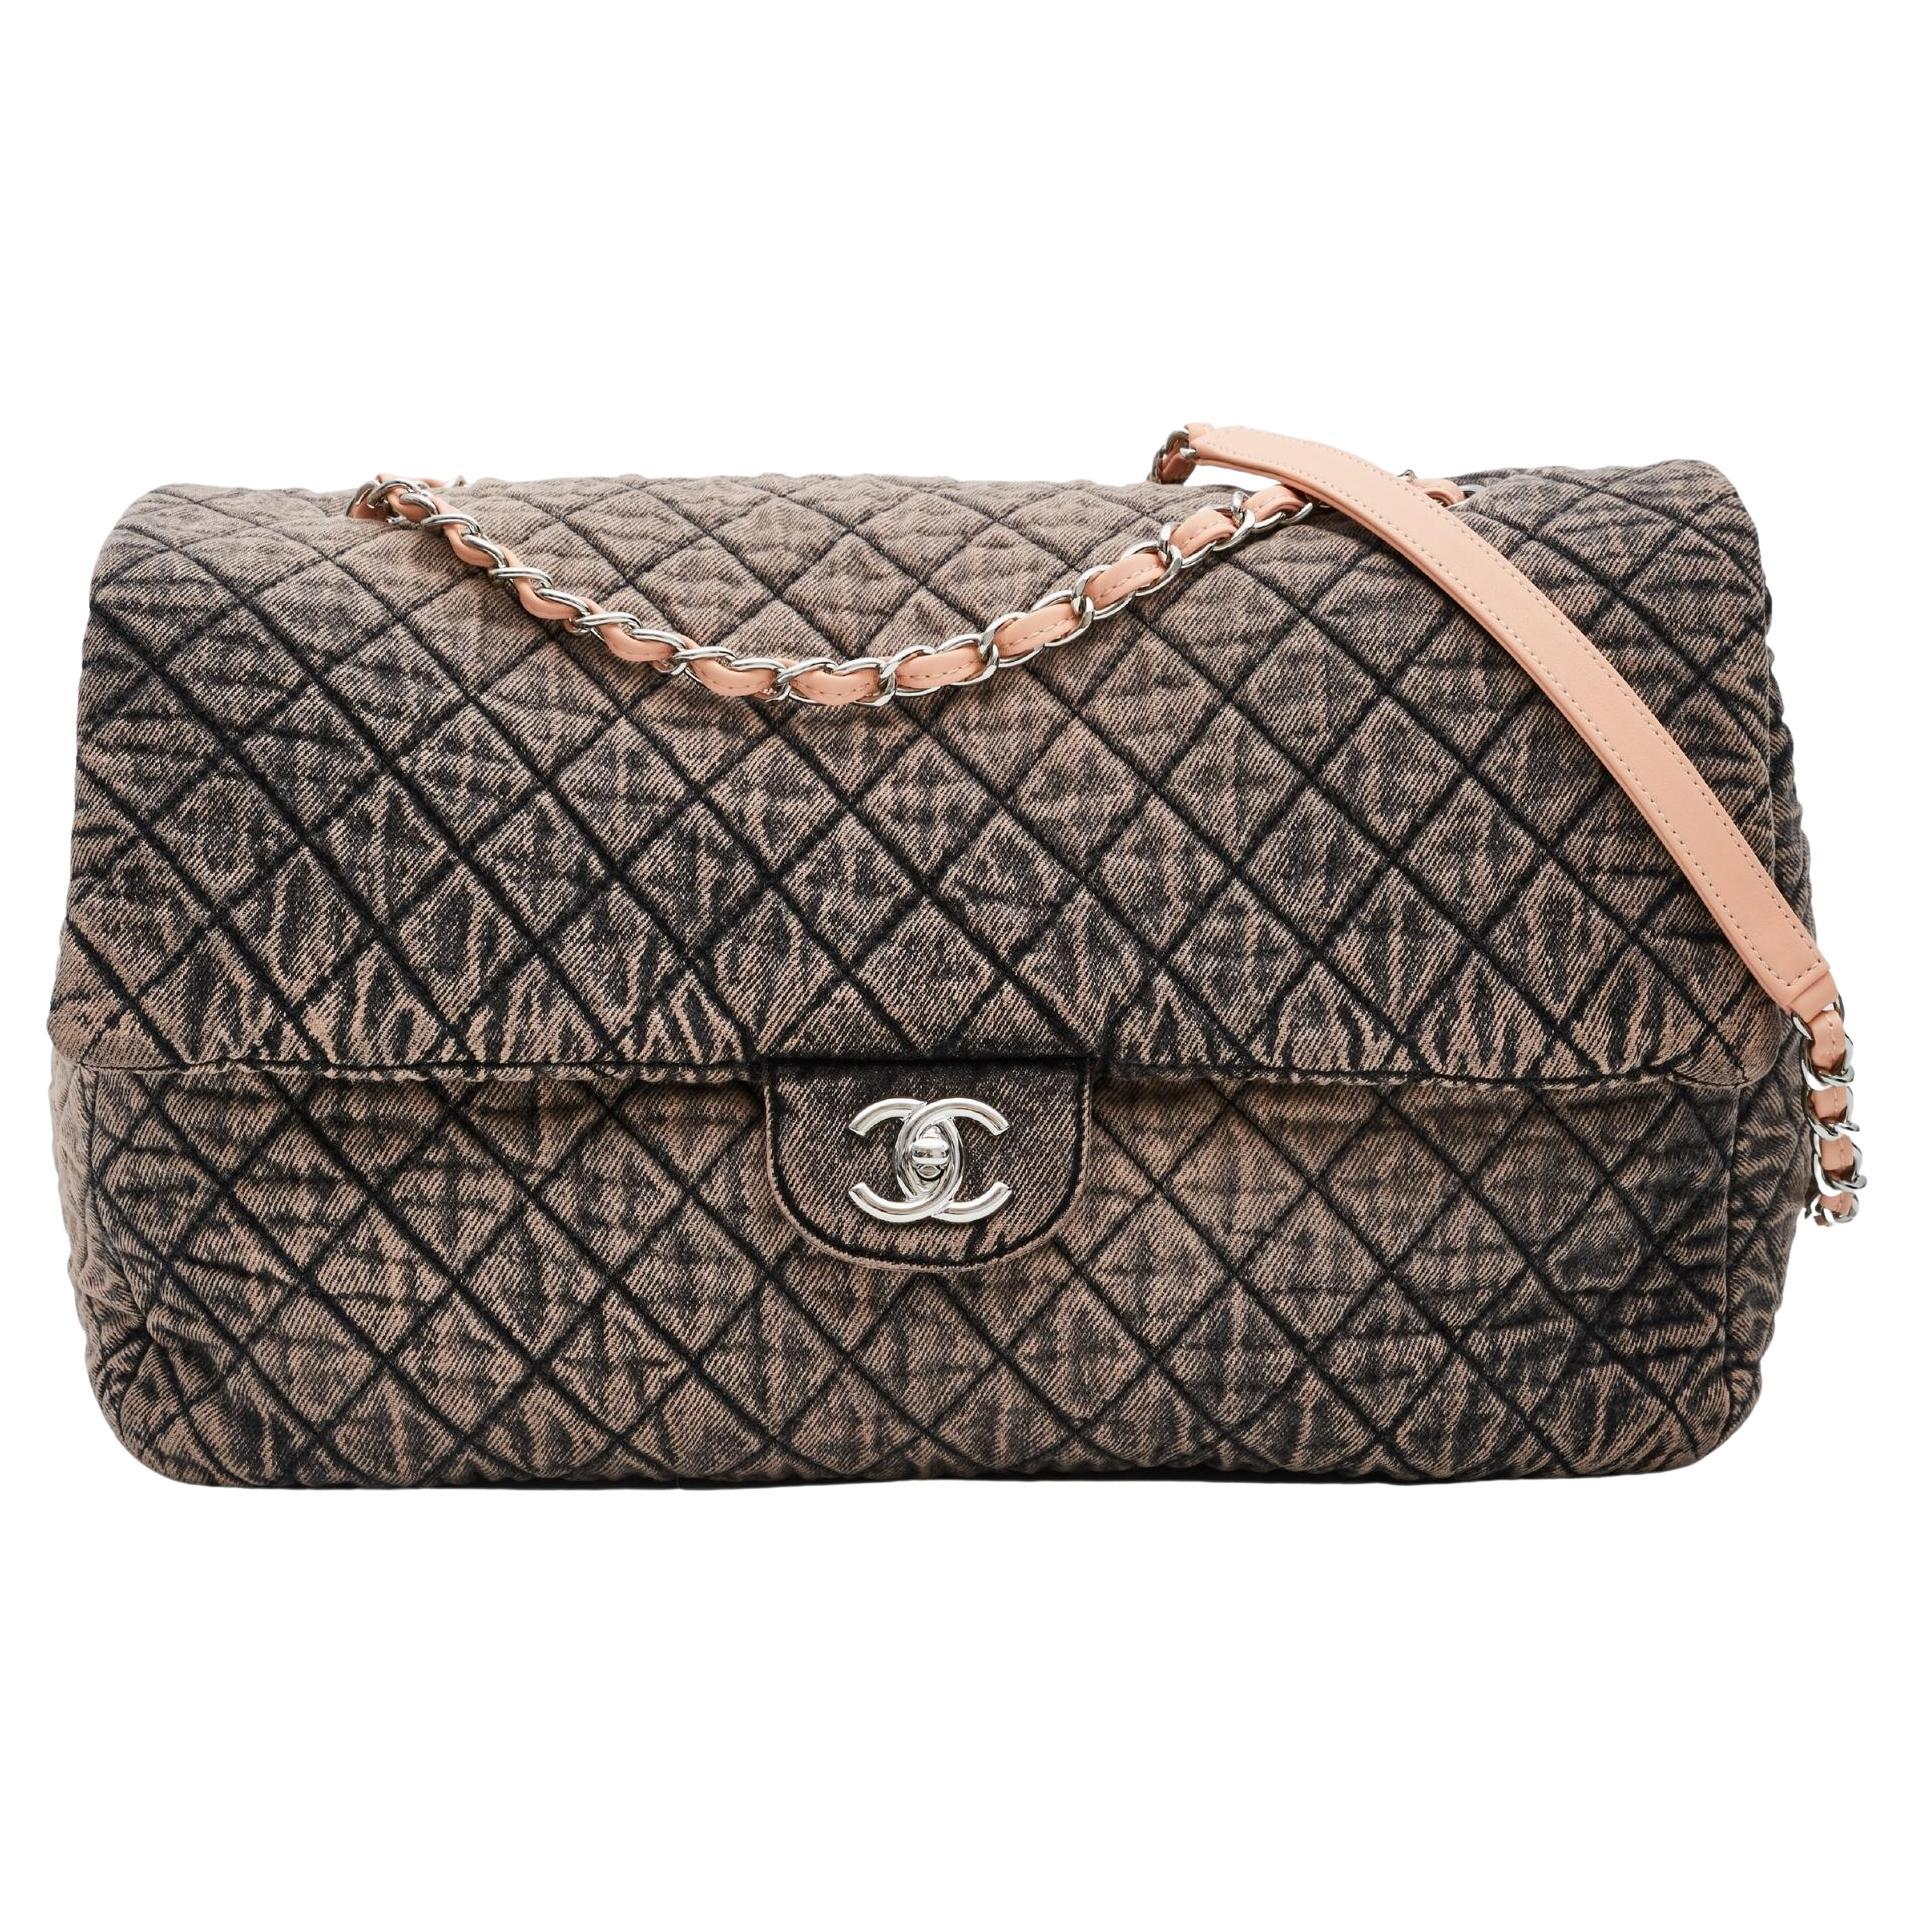 Chanel Denim Classic Medium Double Flap Bag - Blue Shoulder Bags, Handbags  - CHA212727